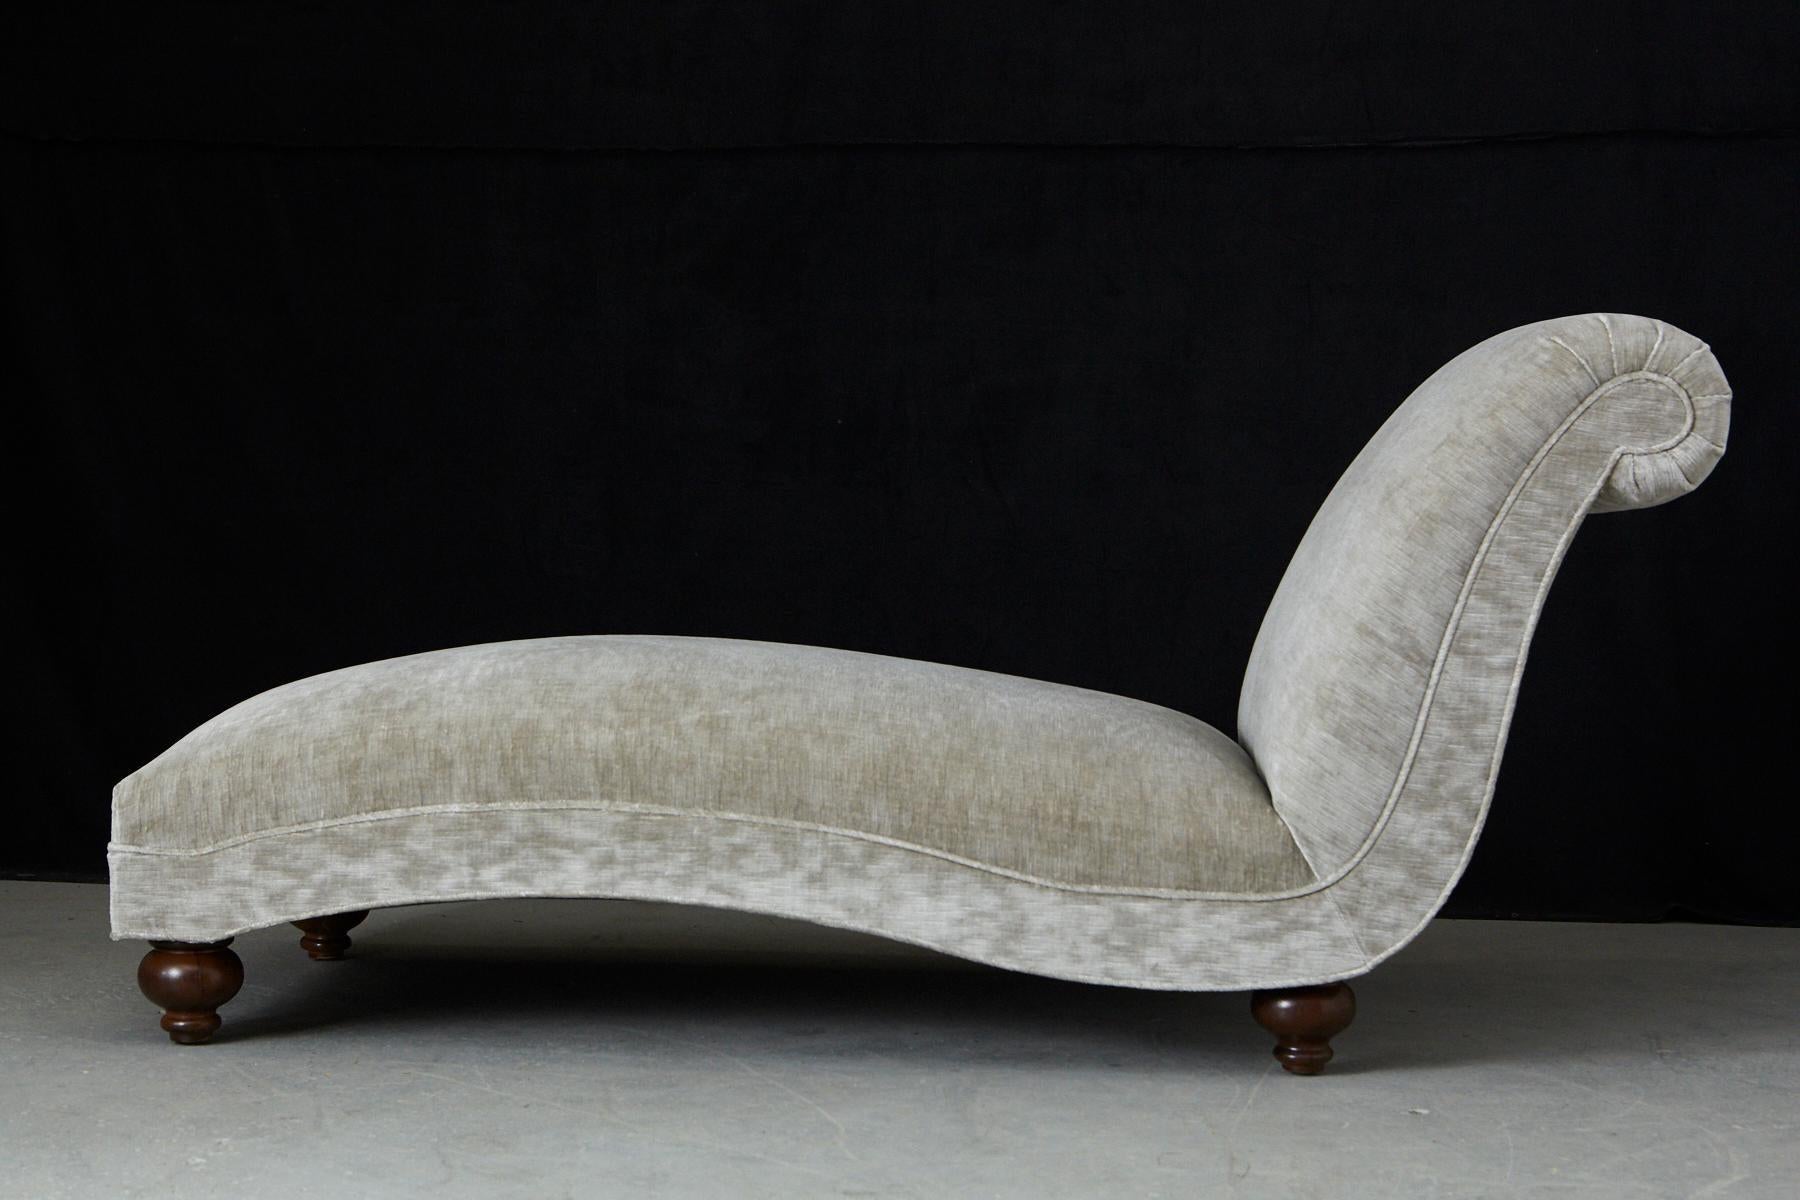 Magnifique chaise longue française des années 1930 au design puriste et à la forme joliment incurvée, montée sur des pieds boules. La pièce a été récemment recouverte d'un velours beige strié. Une pièce très confortable et très remarquée.